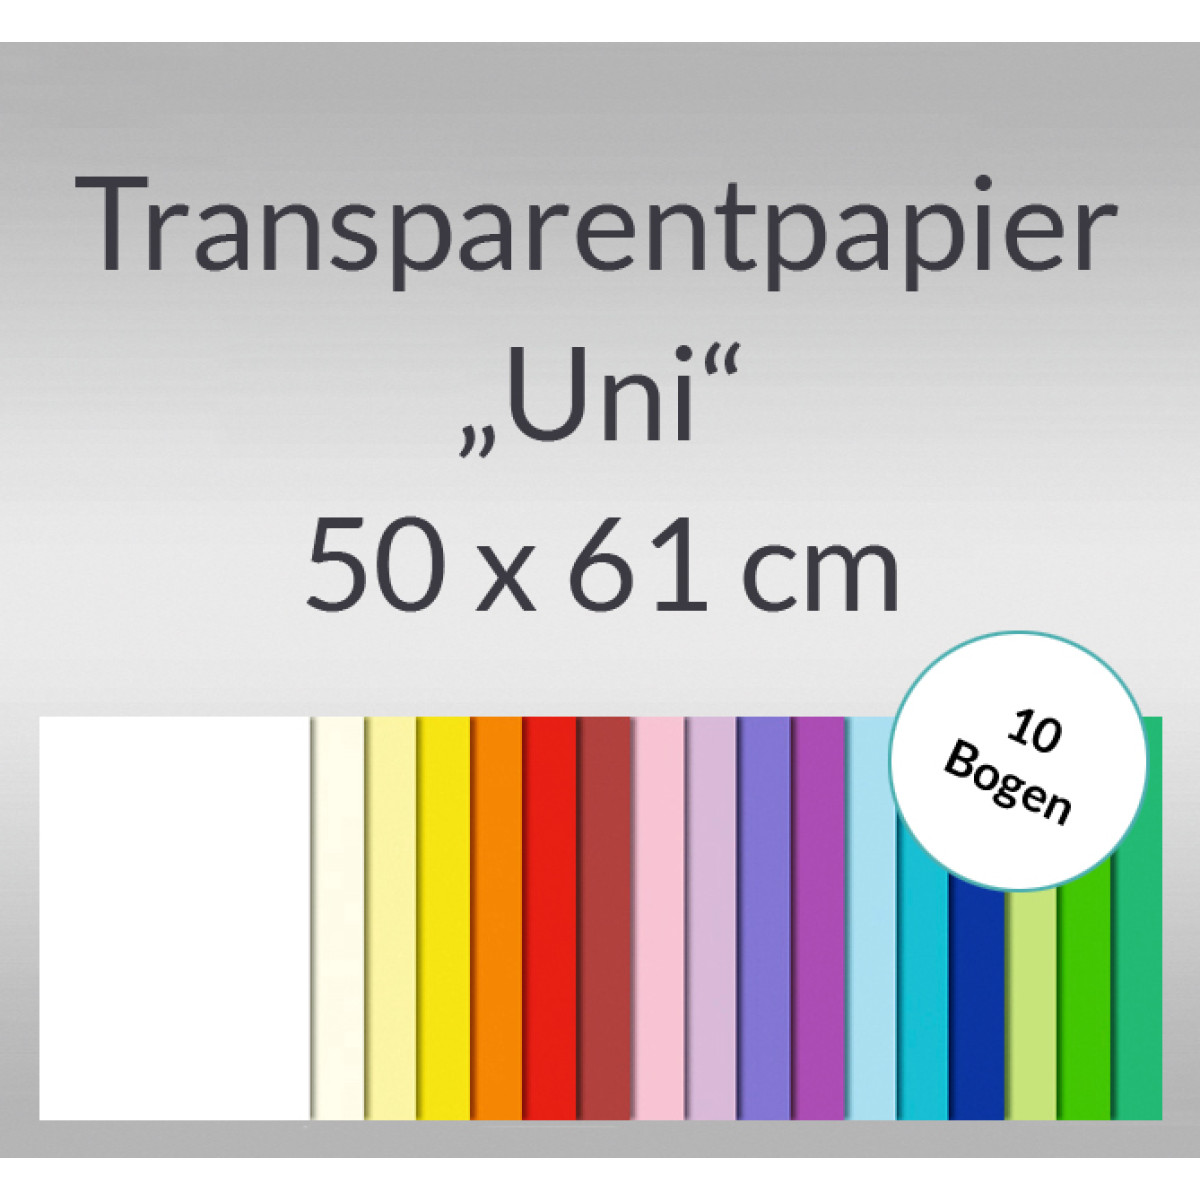 Transparentpapier "Uni" 50 x 61 cm - 10 Bogen